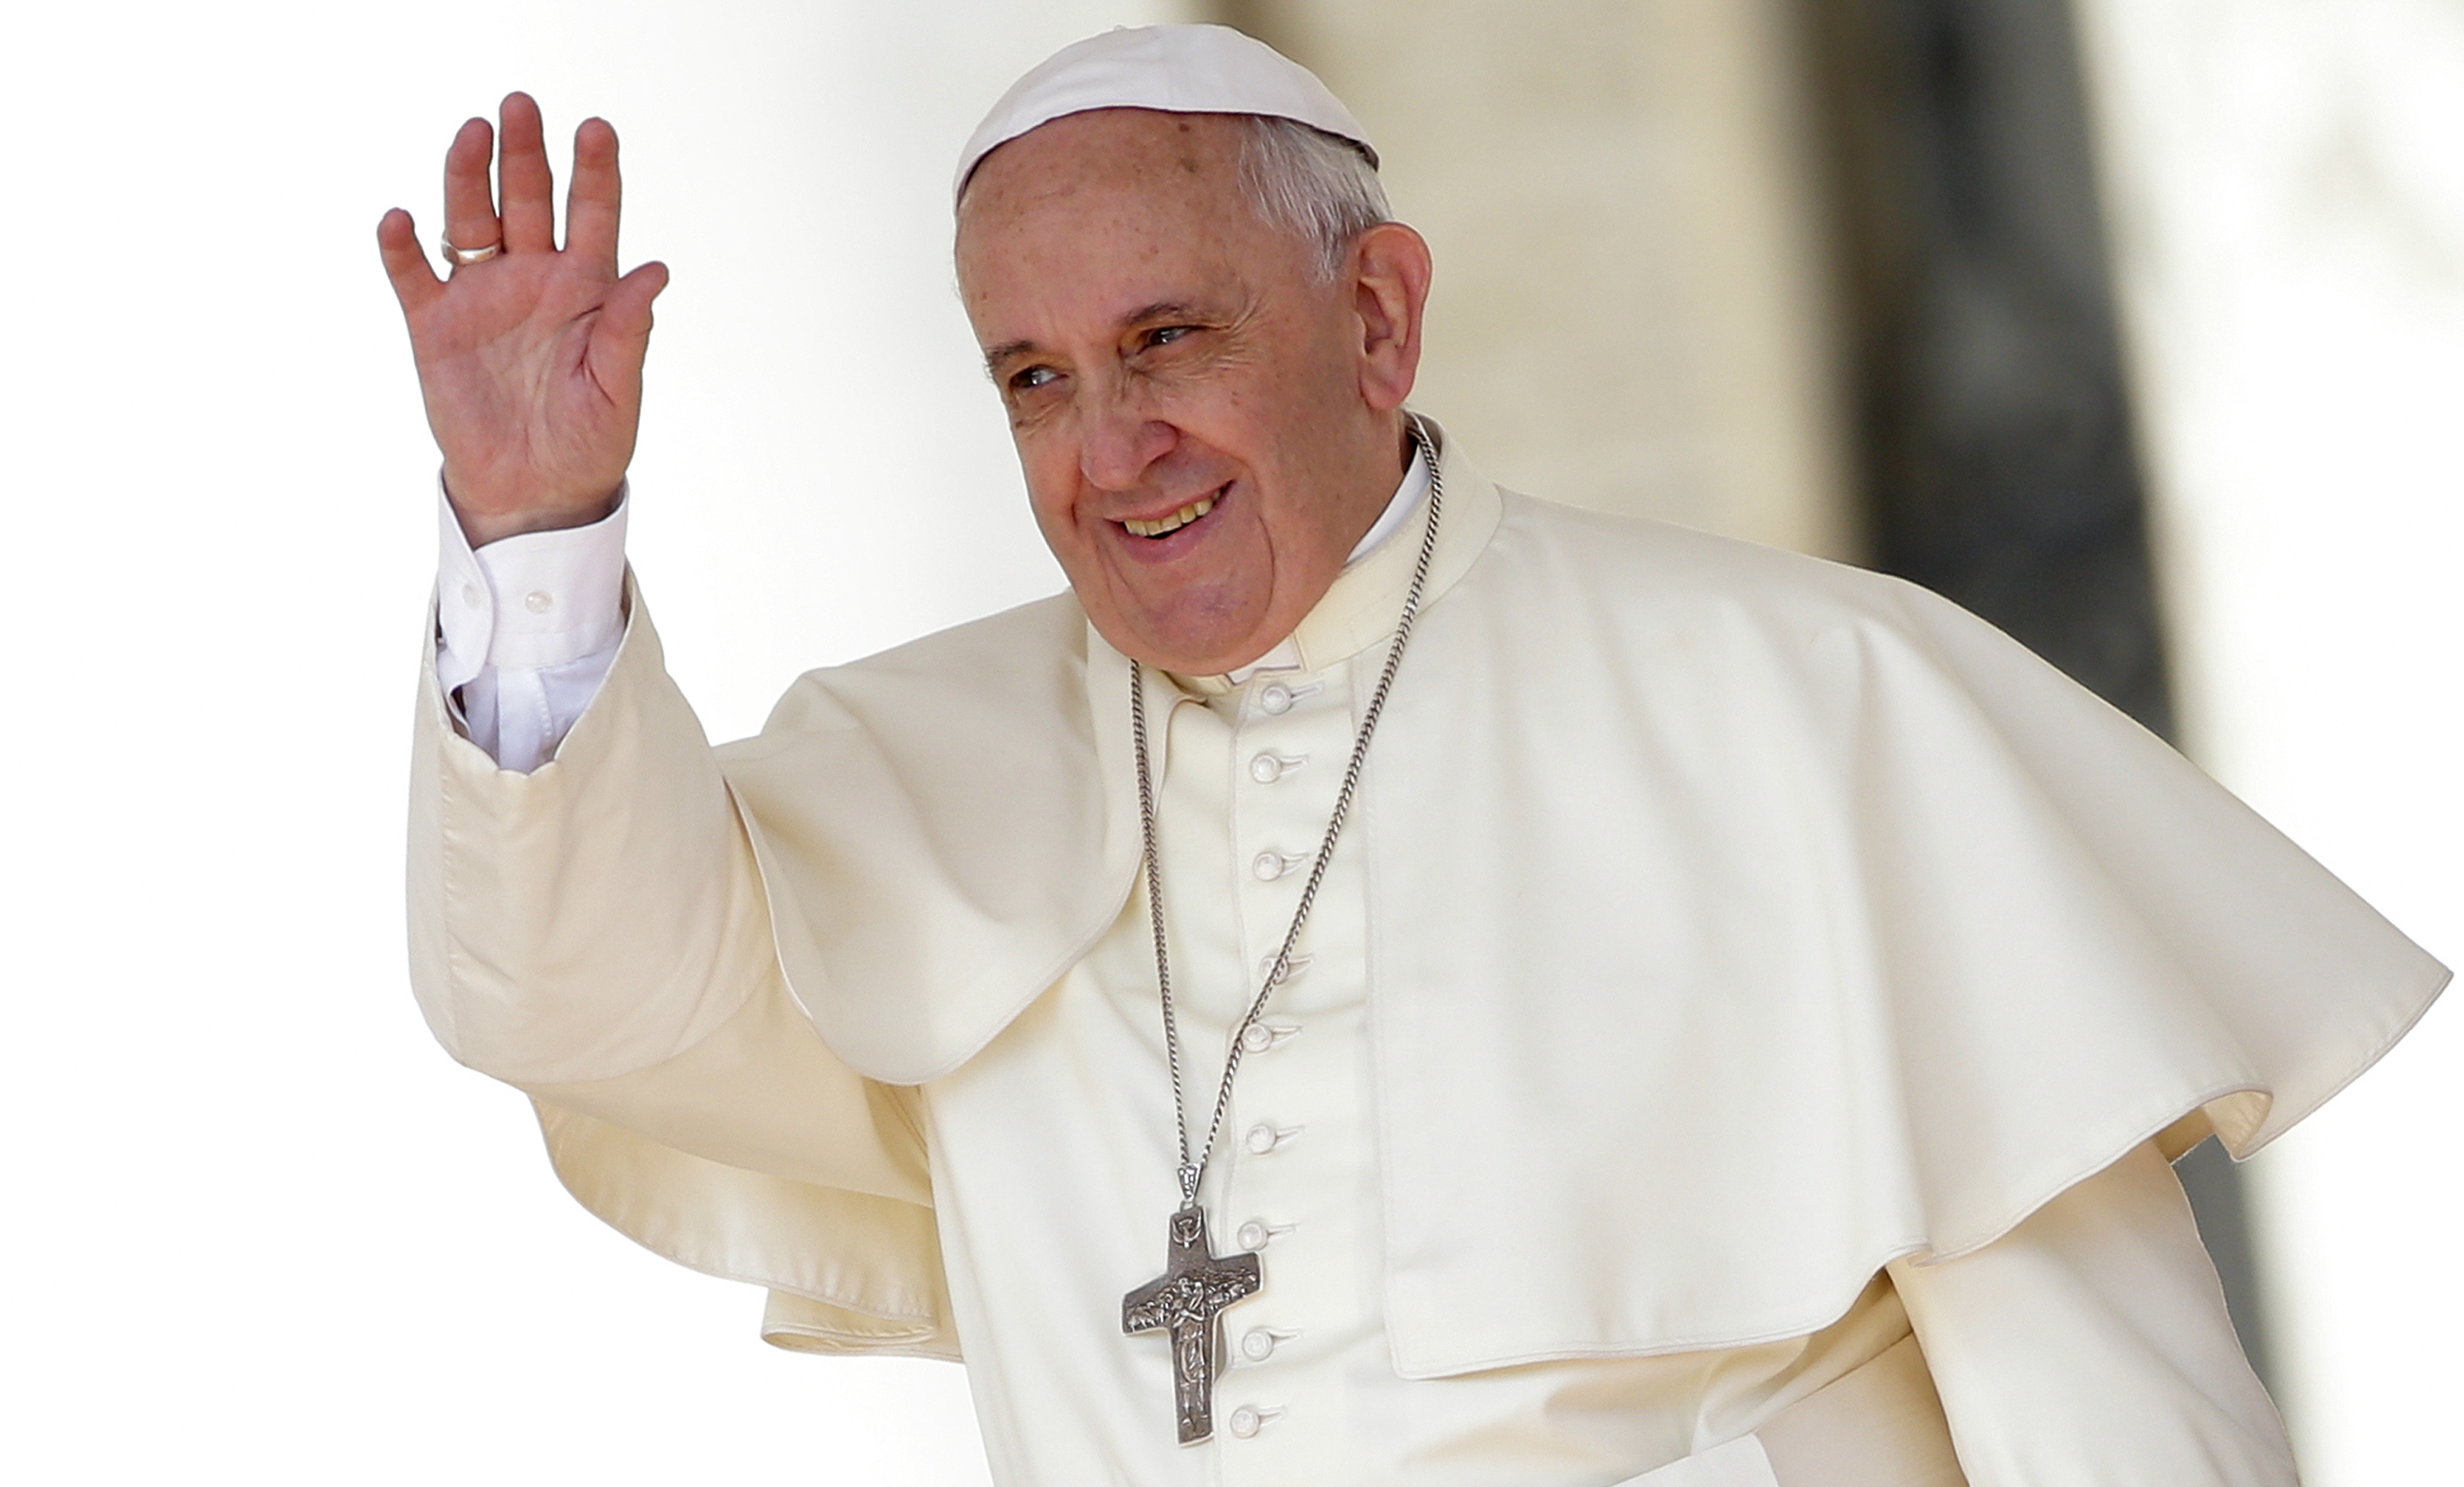 Հռոմի Ֆրանցիսկոս պապը մտահոգություն է հայտնել Լաչինում տիրող հումանիտար իրավիճակի համար